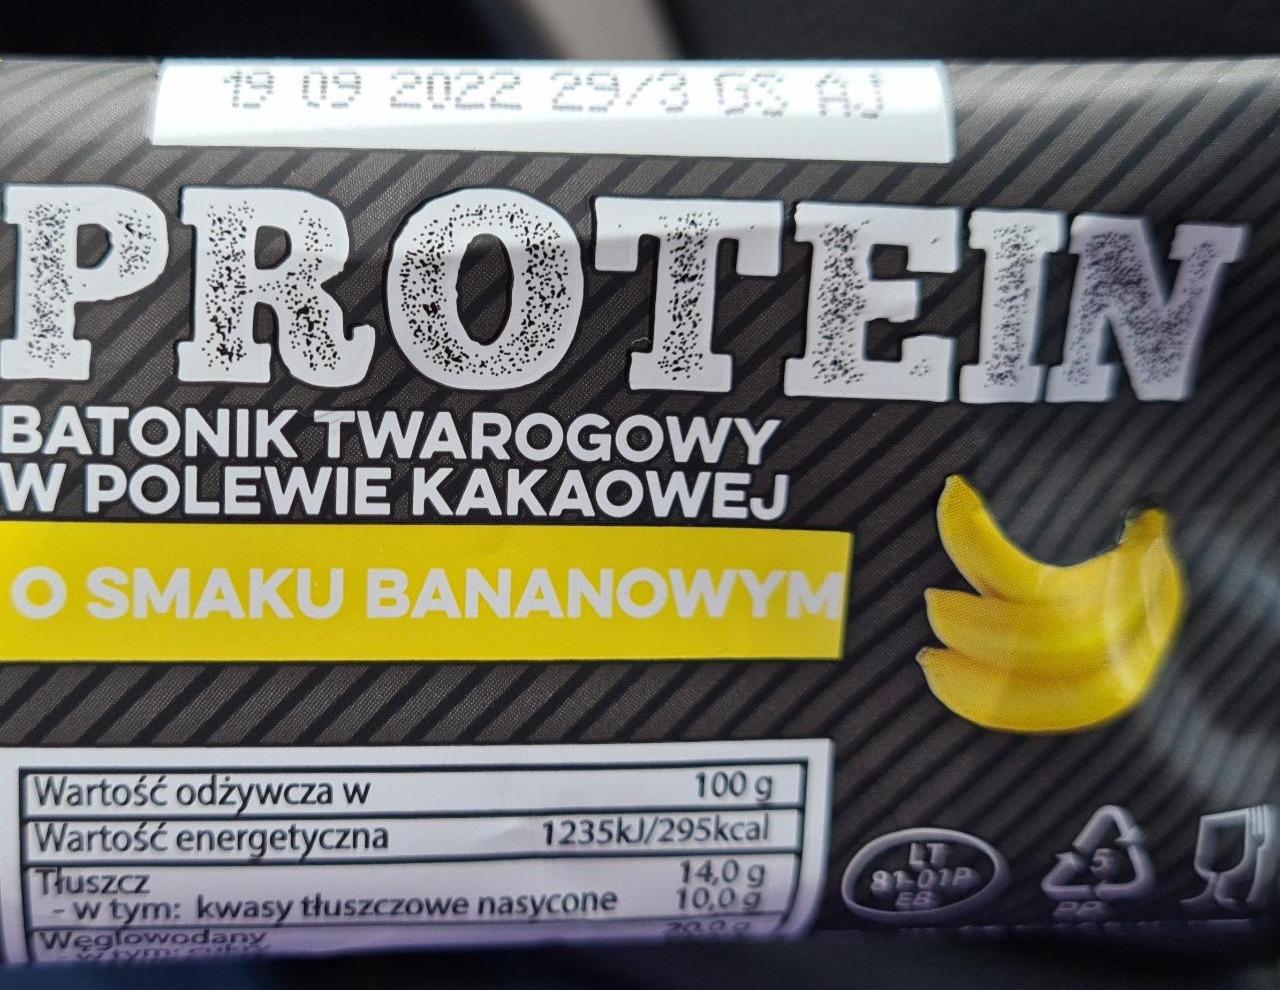 Фото - Батончик протеиновый творожный со вкусом банана